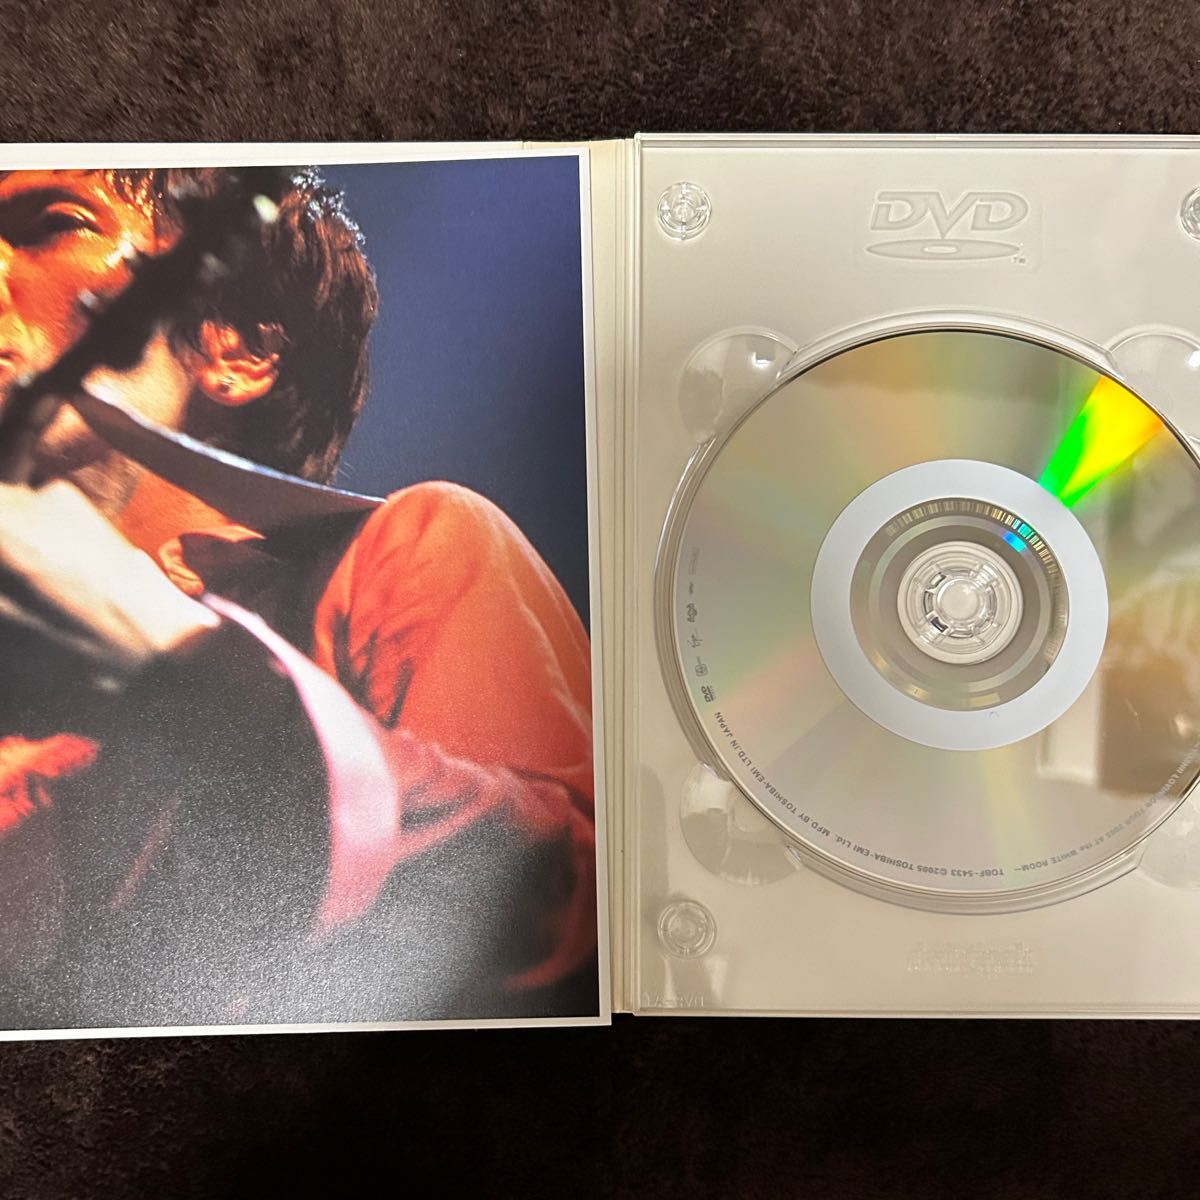 吉井和哉 YOSHII LOVINSON/STILL ALIVE～YOSHII LOVI… DVD